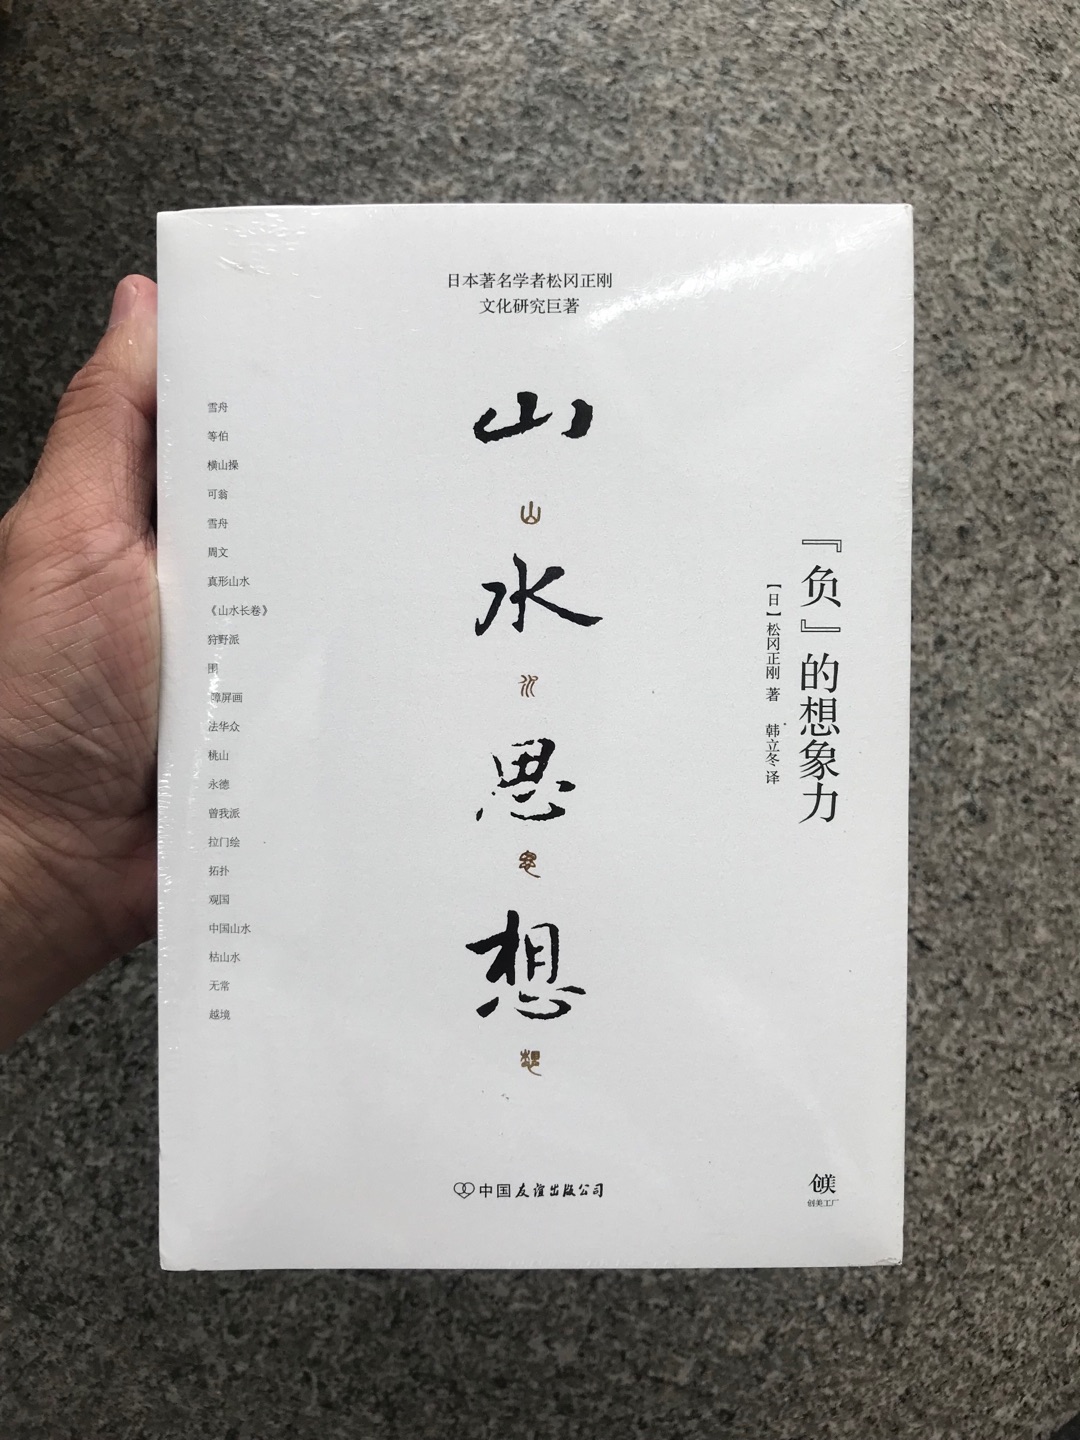 日本人的思想很多脱胎于中国，又形成了自己特色。比如枯山水，这演变的来龙去脉，希望从本书中能够略知一二。